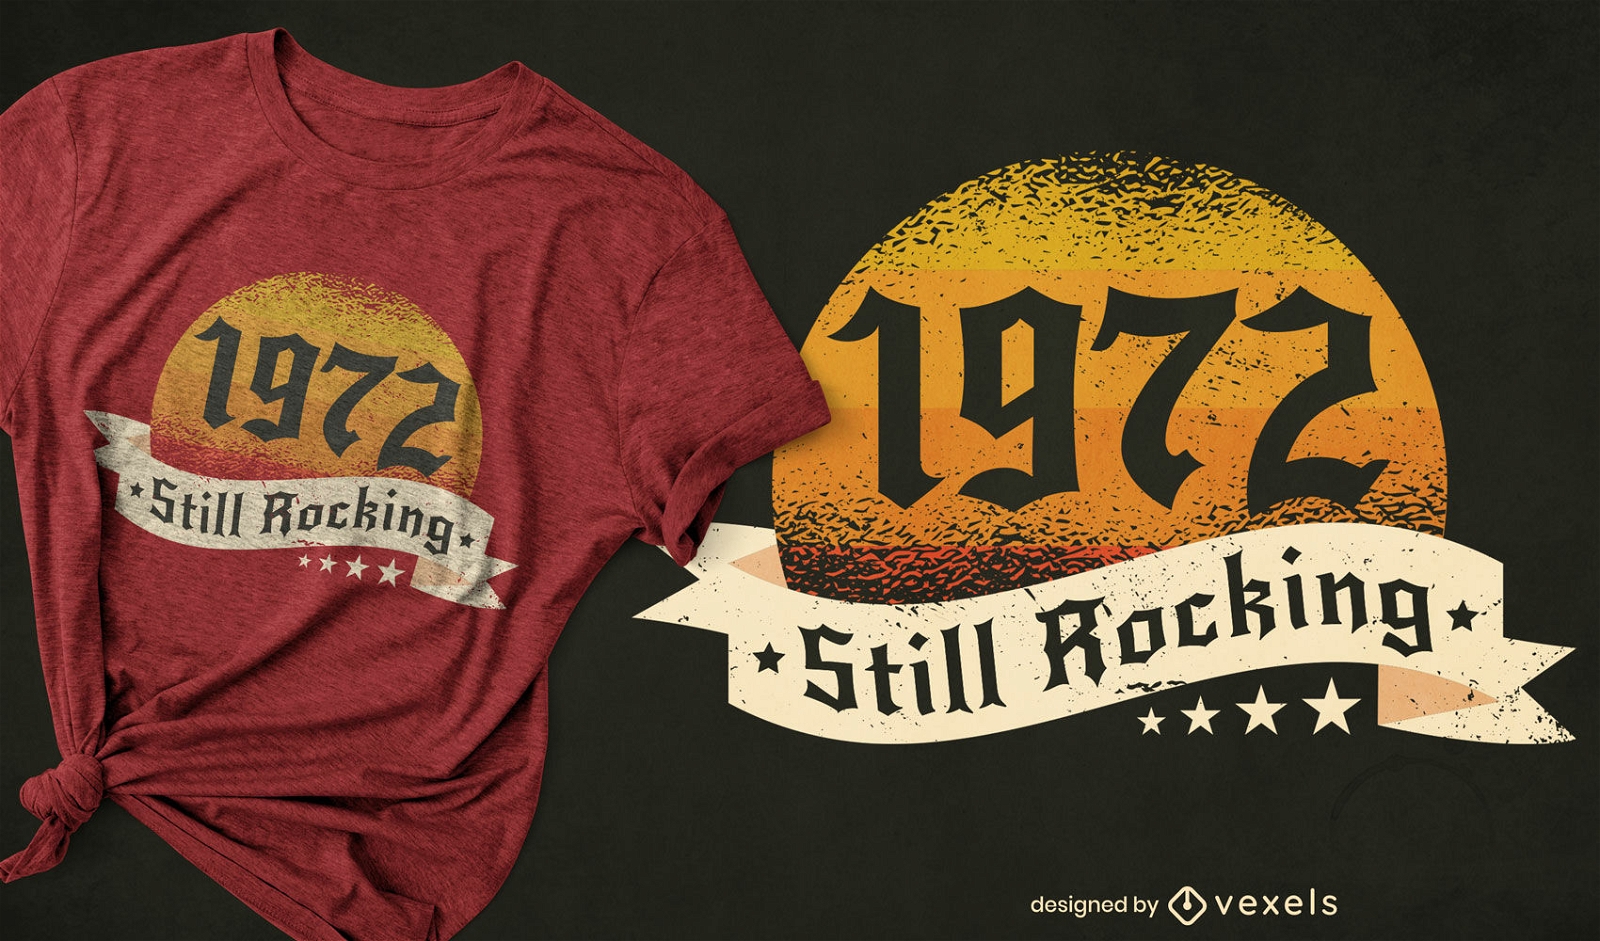 1972 ainda está em alta no design de camisetas